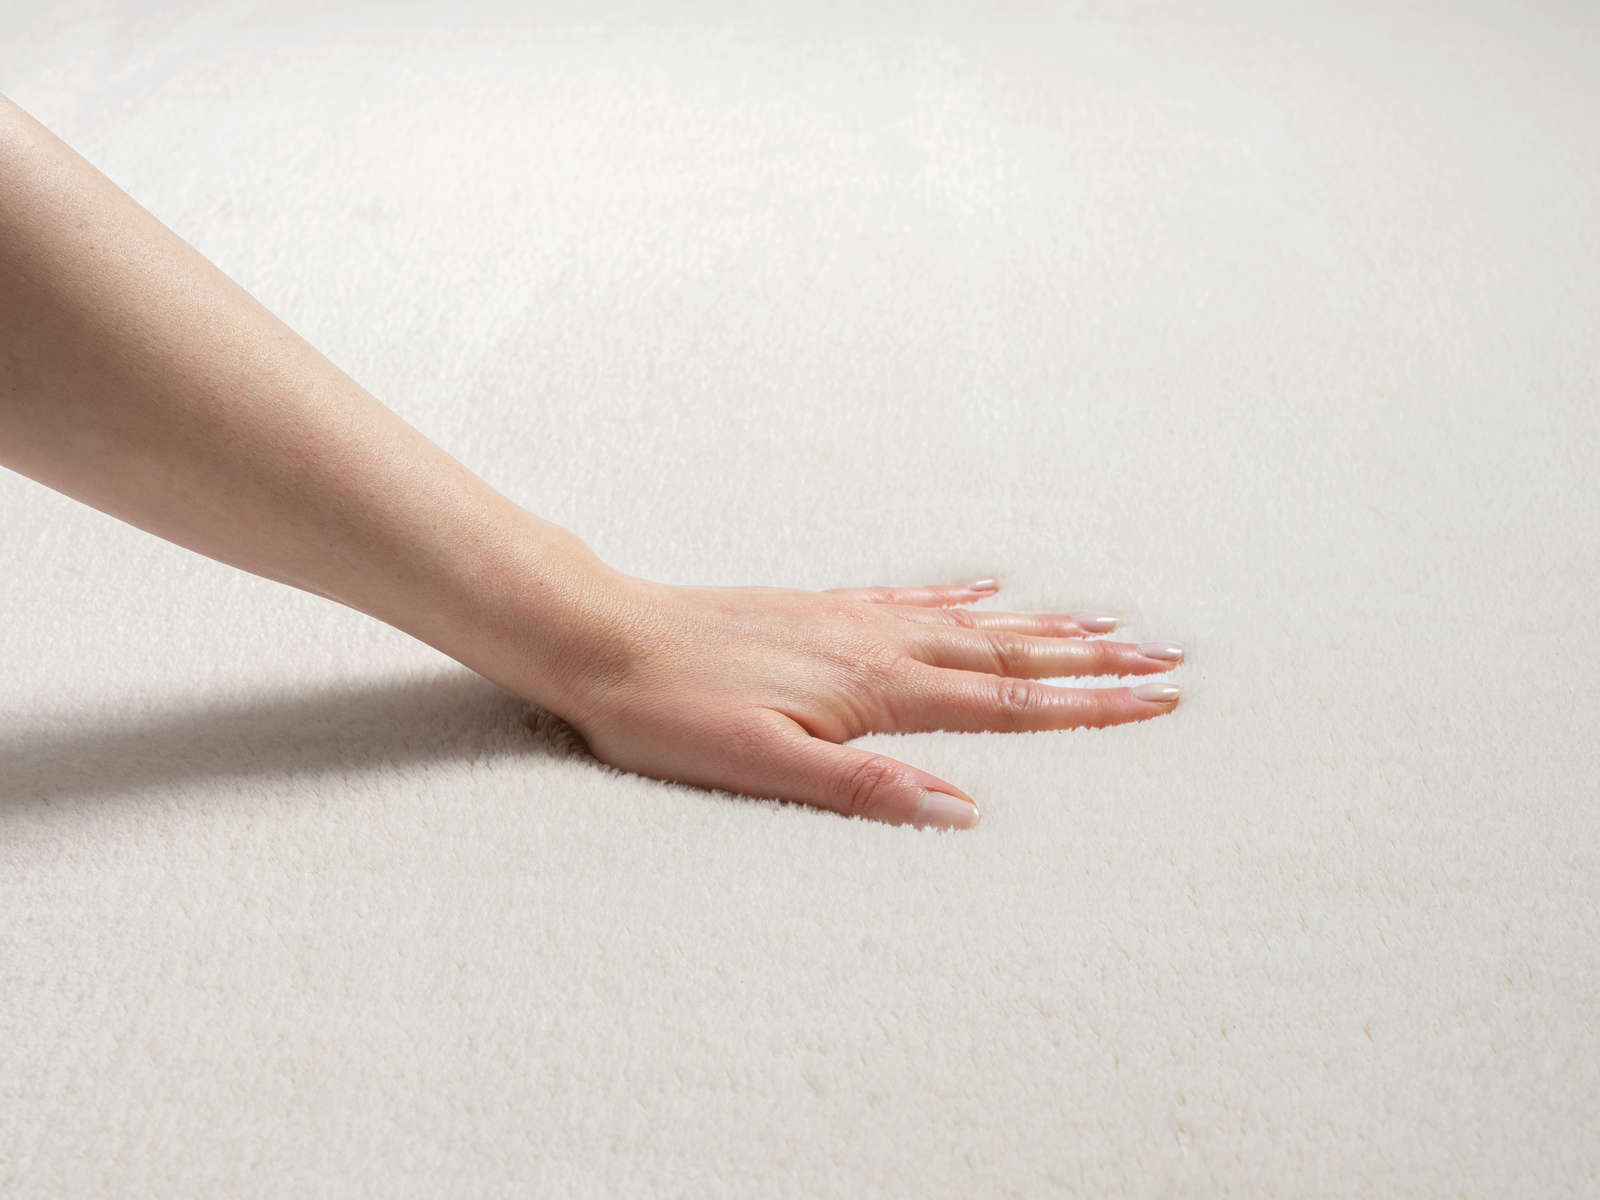             Fashionable high pile carpet in cream - 290 x 200 cm
        